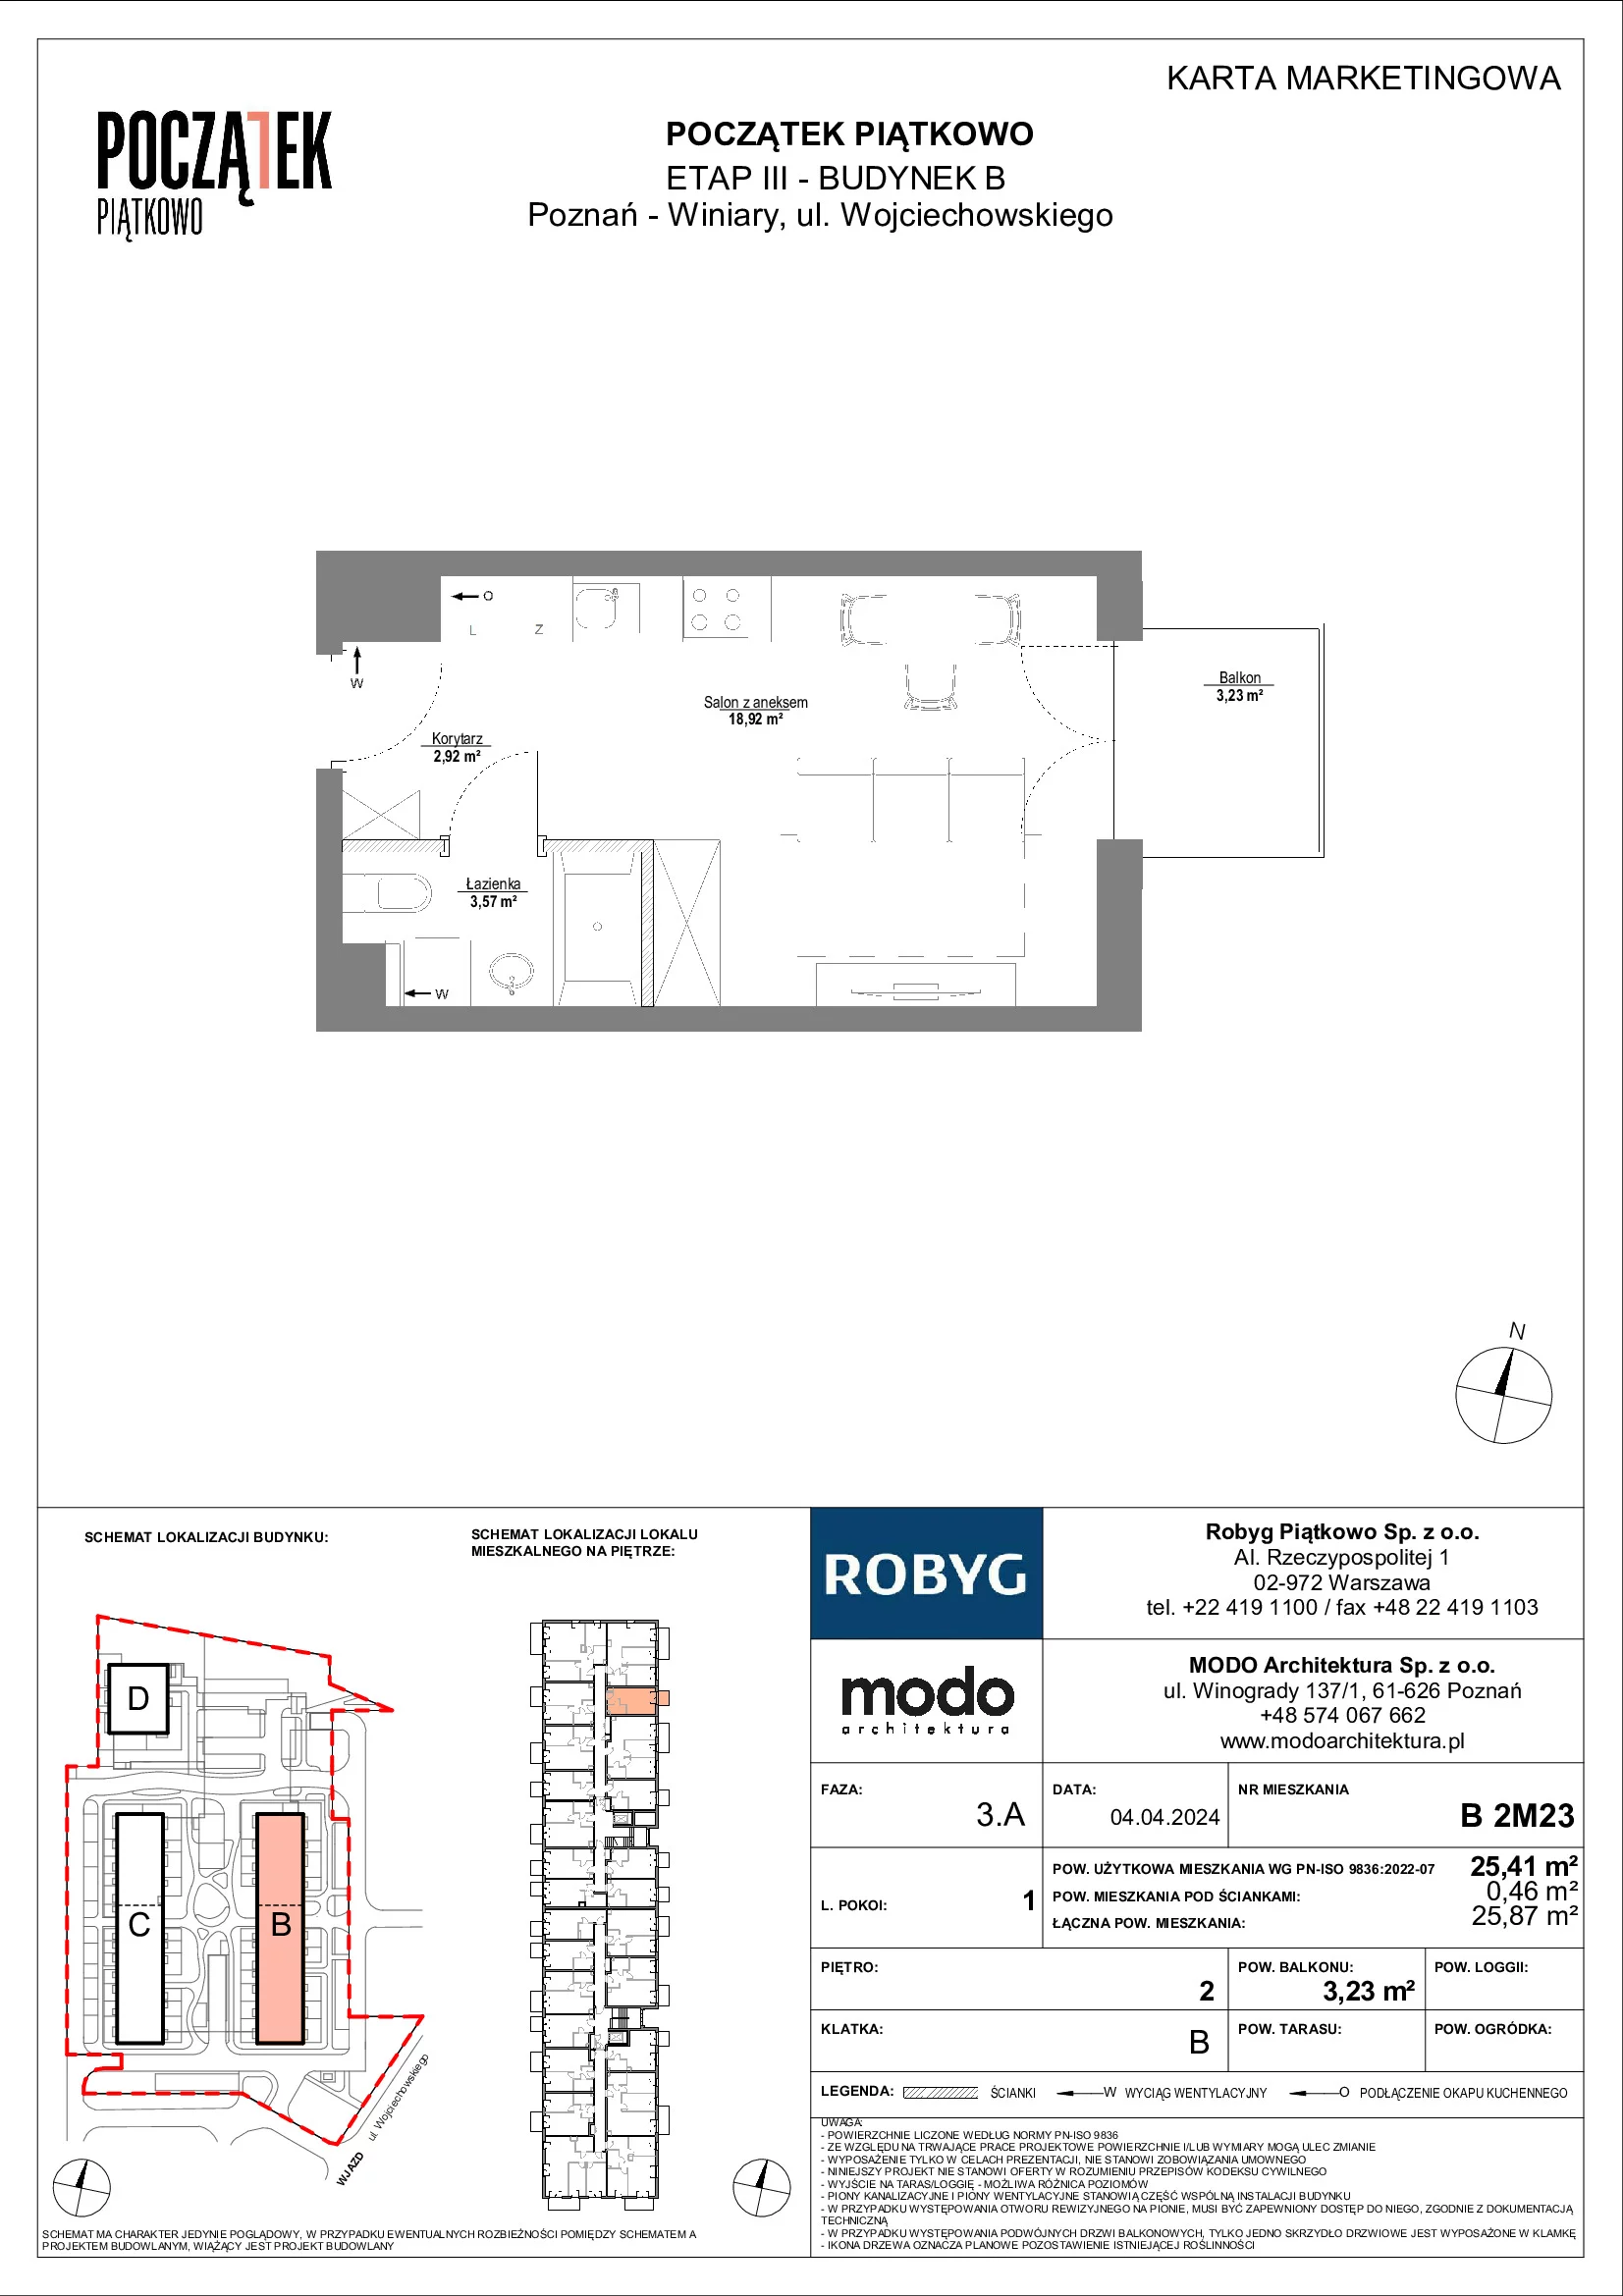 Mieszkanie 25,41 m², piętro 2, oferta nr B.2M23, Początek Piątkowo, Poznań, Piątkowo, ul. Wojciechowskiego